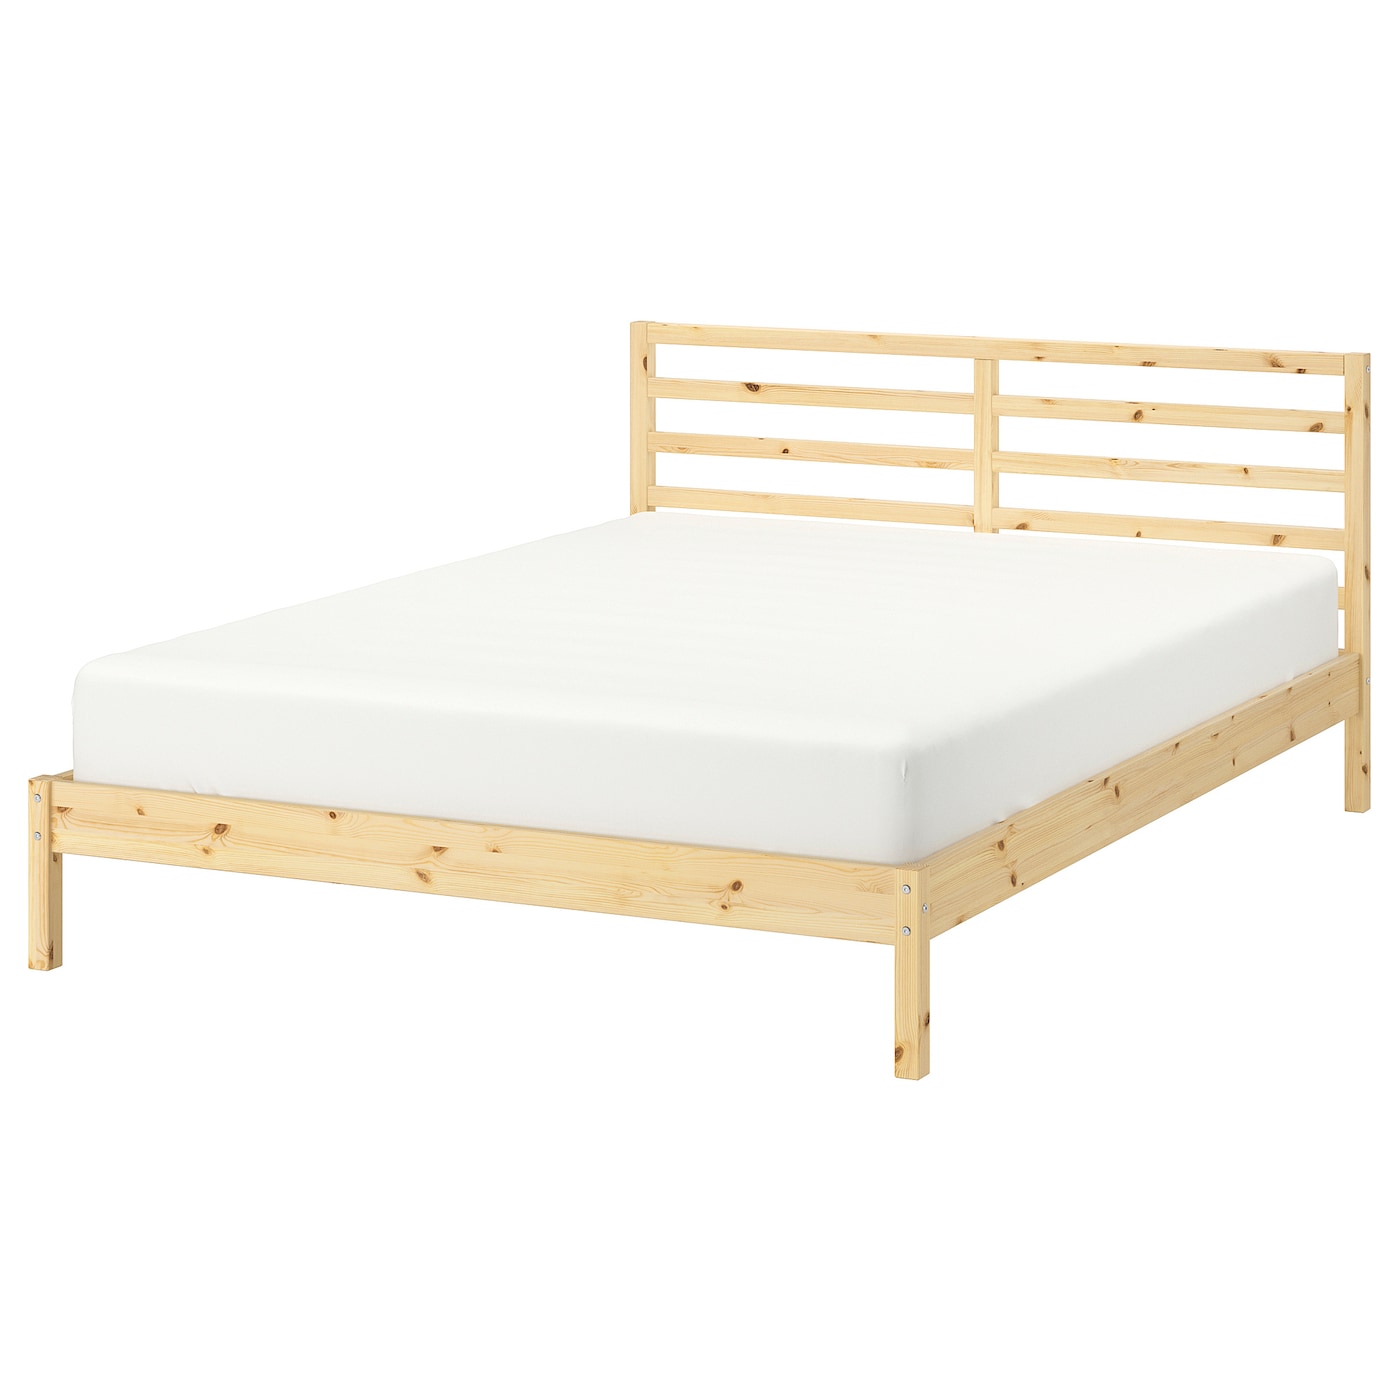 Двуспальная кровать - IKEA TARVA/LURÖY/LUROY, 200х160 см, сосна, ТАРВА/ЛУРОЙ ИКЕА